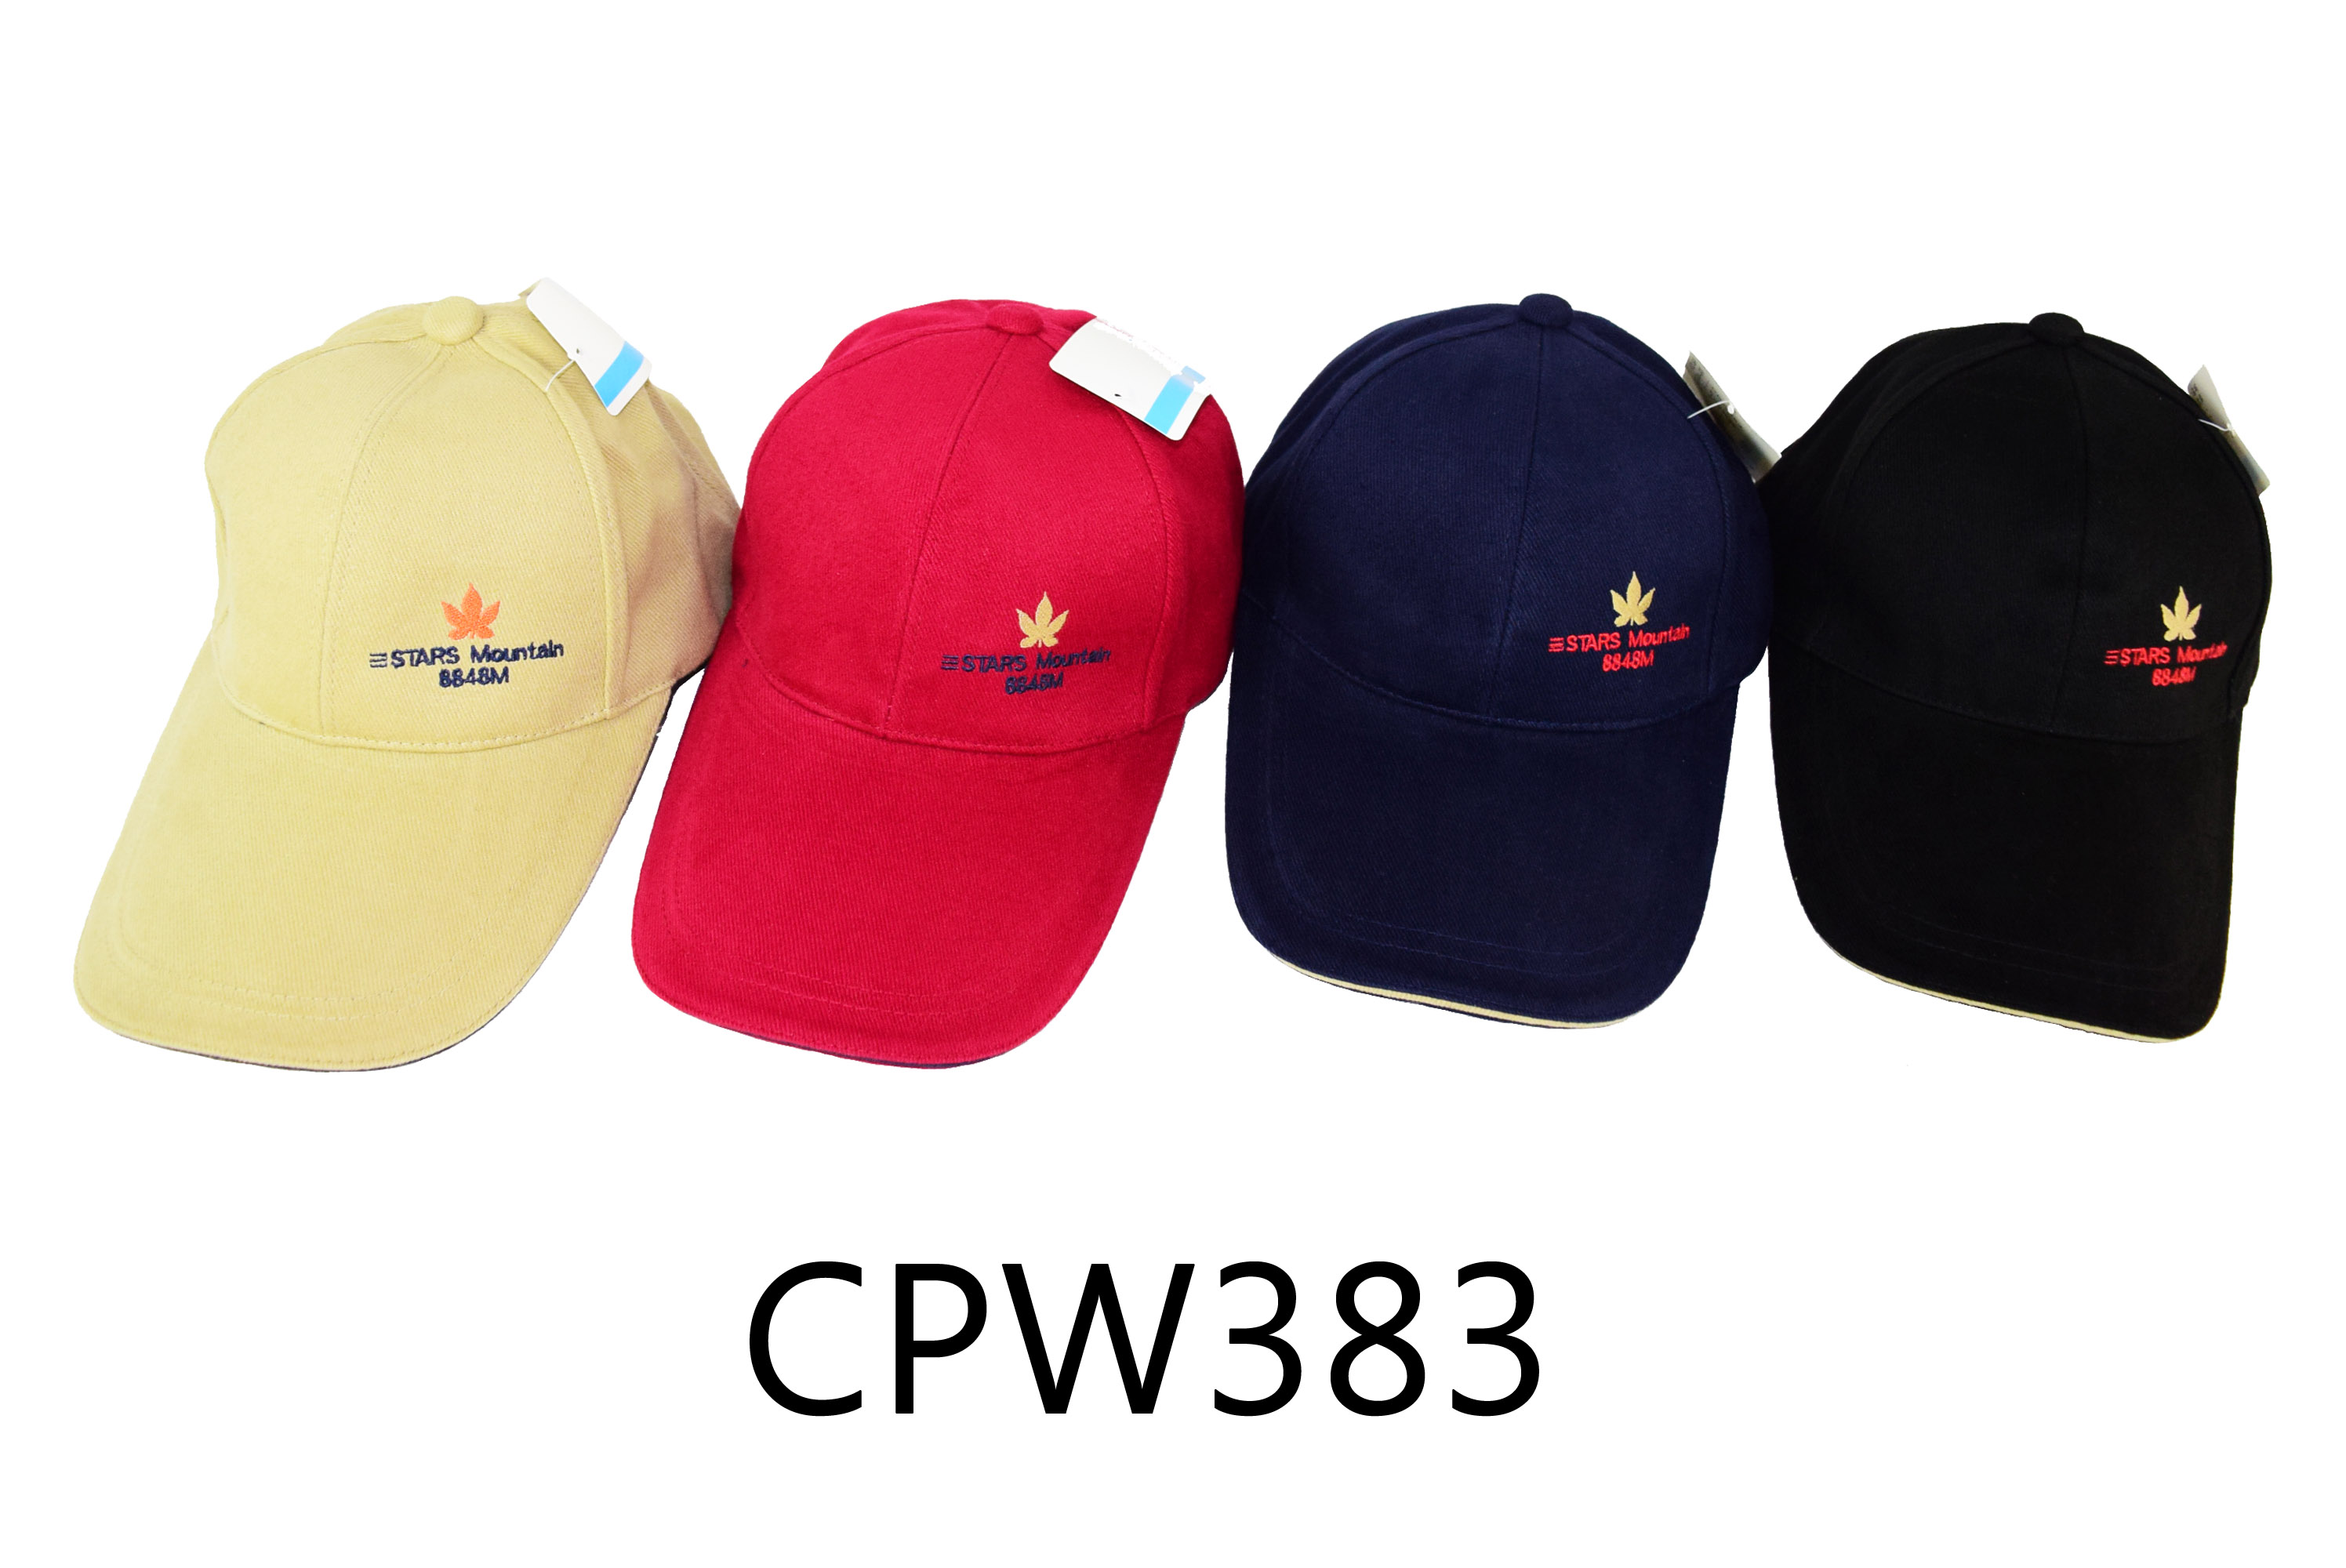 CPW383 素色棉質球帽 繡楓葉和三STARS MOUNTAIN 三星製帽